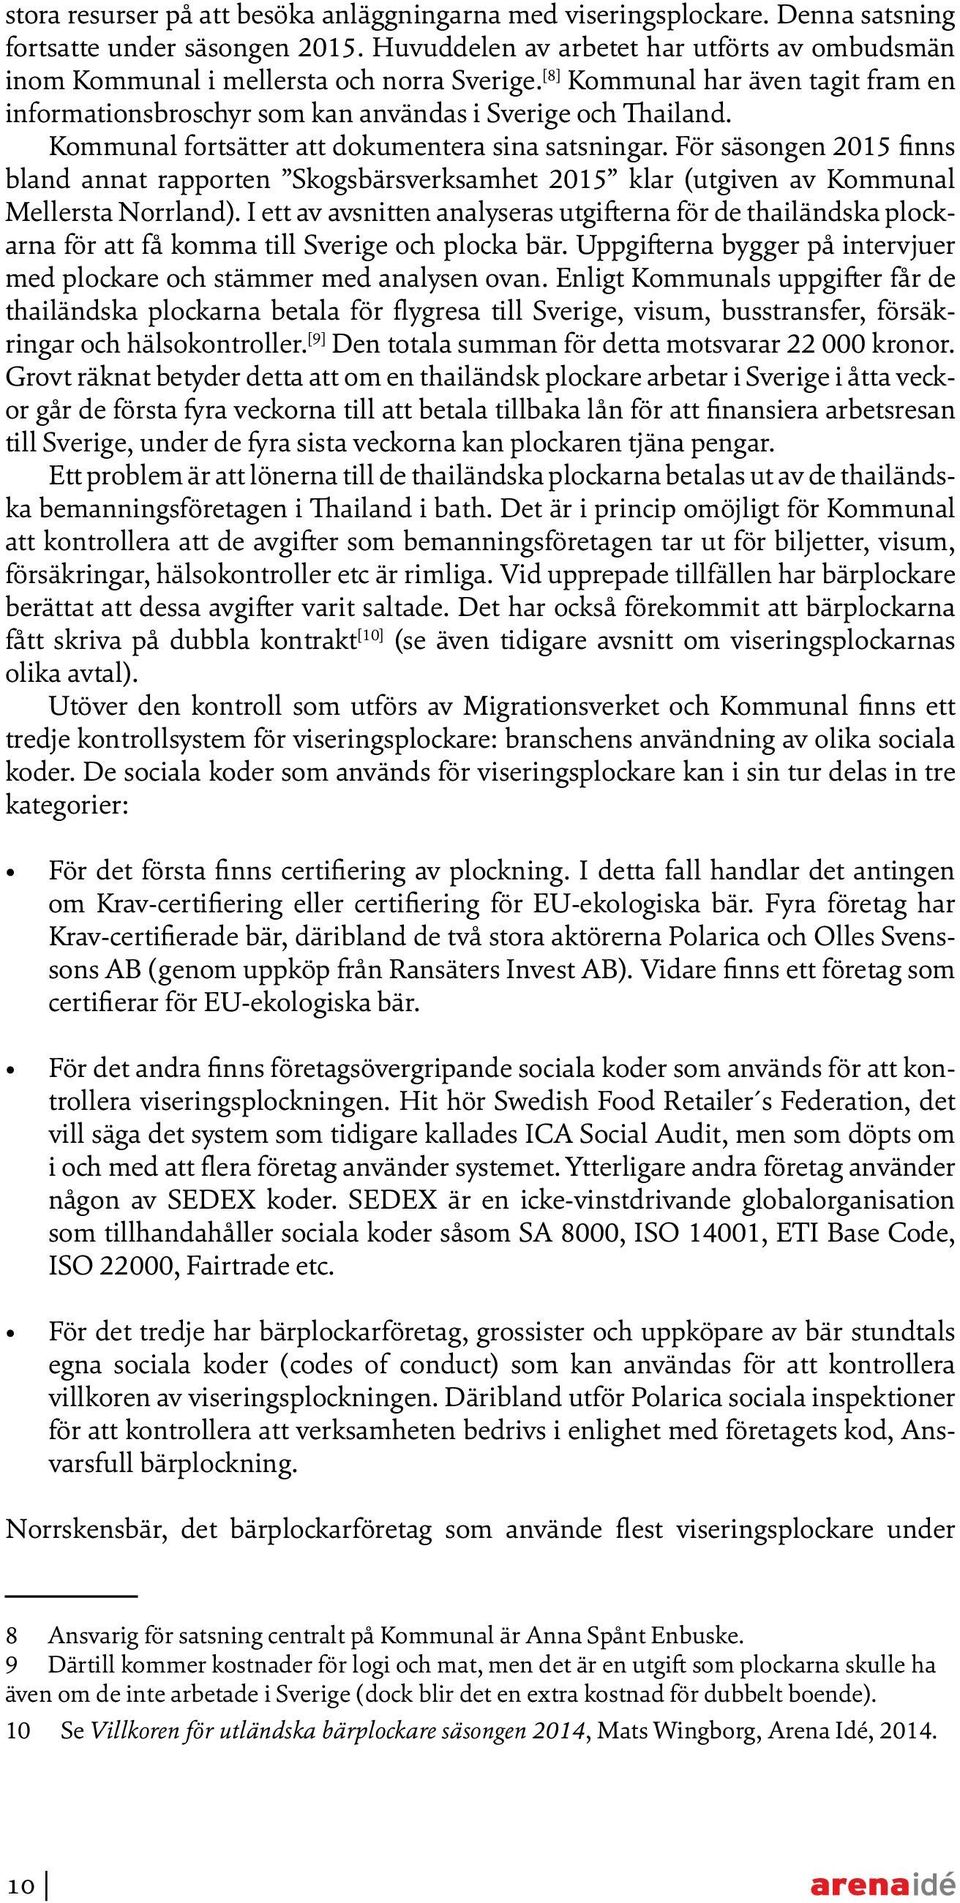 Kommunal fortsätter att dokumentera sina satsningar. För säsongen 2015 finns bland annat rapporten Skogsbärsverksamhet 2015 klar (utgiven av Kommunal Mellersta Norrland).